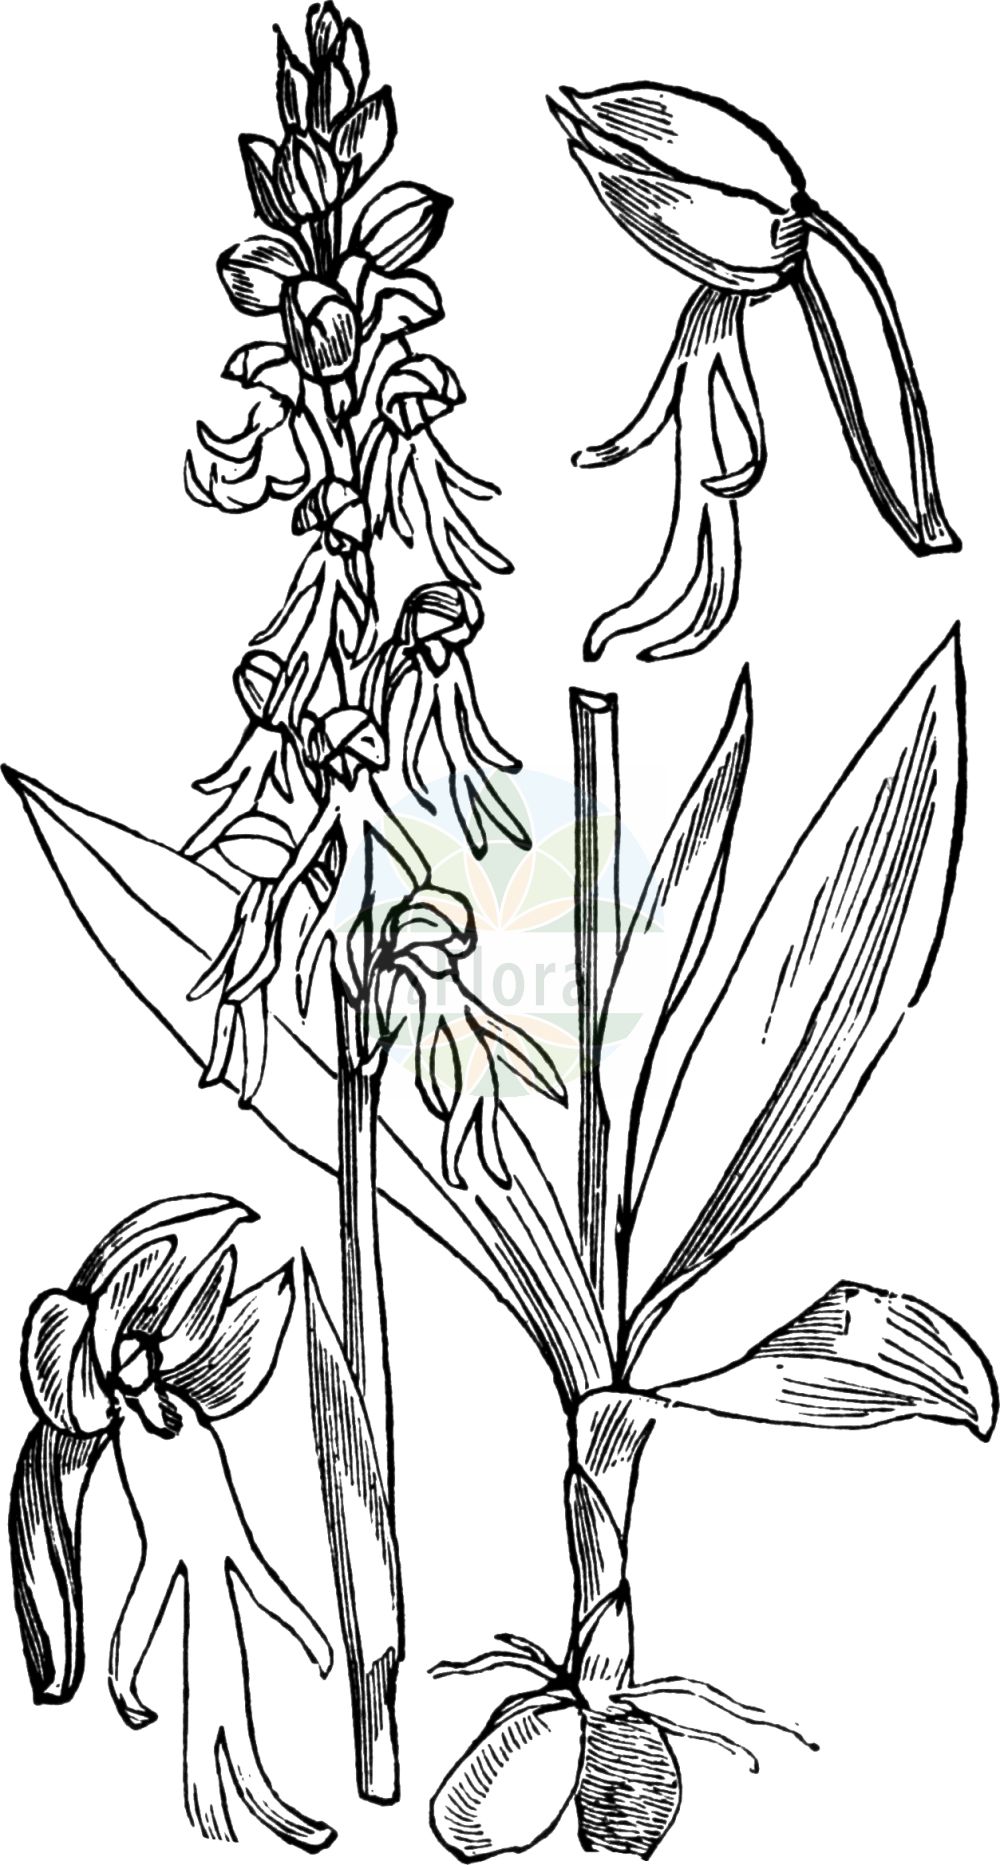 Historische Abbildung von Orchis anthropophora (Ohnsporn - Man Orchid). Das Bild zeigt Blatt, Bluete, Frucht und Same. ---- Historical Drawing of Orchis anthropophora (Ohnsporn - Man Orchid). The image is showing leaf, flower, fruit and seed.(Orchis anthropophora,Ohnsporn,Man Orchid,Aceras anthropomorphum,Aceras anthropophorum,Arachnites anthropophora,Himantoglossum anthropophorum,Loroglossum anthropophorum,Loroglossum brachyglotte,Ophrys anthropomorpha,Ophrys anthropophora,Orchis anthropophora,Satyrium anthropomorphum,Satyrium anthropophorum,Serapias anthropophora,Ohnsporn,Fratzenorchis,Ohnhorn,Puppenorchis,Man Orchid,Orchis,Knabenkraut,Orchidaceae,Knabenkrautgewächse,Orchid family,Blatt,Bluete,Frucht,Same,leaf,flower,fruit,seed,Fitch et al. (1880))